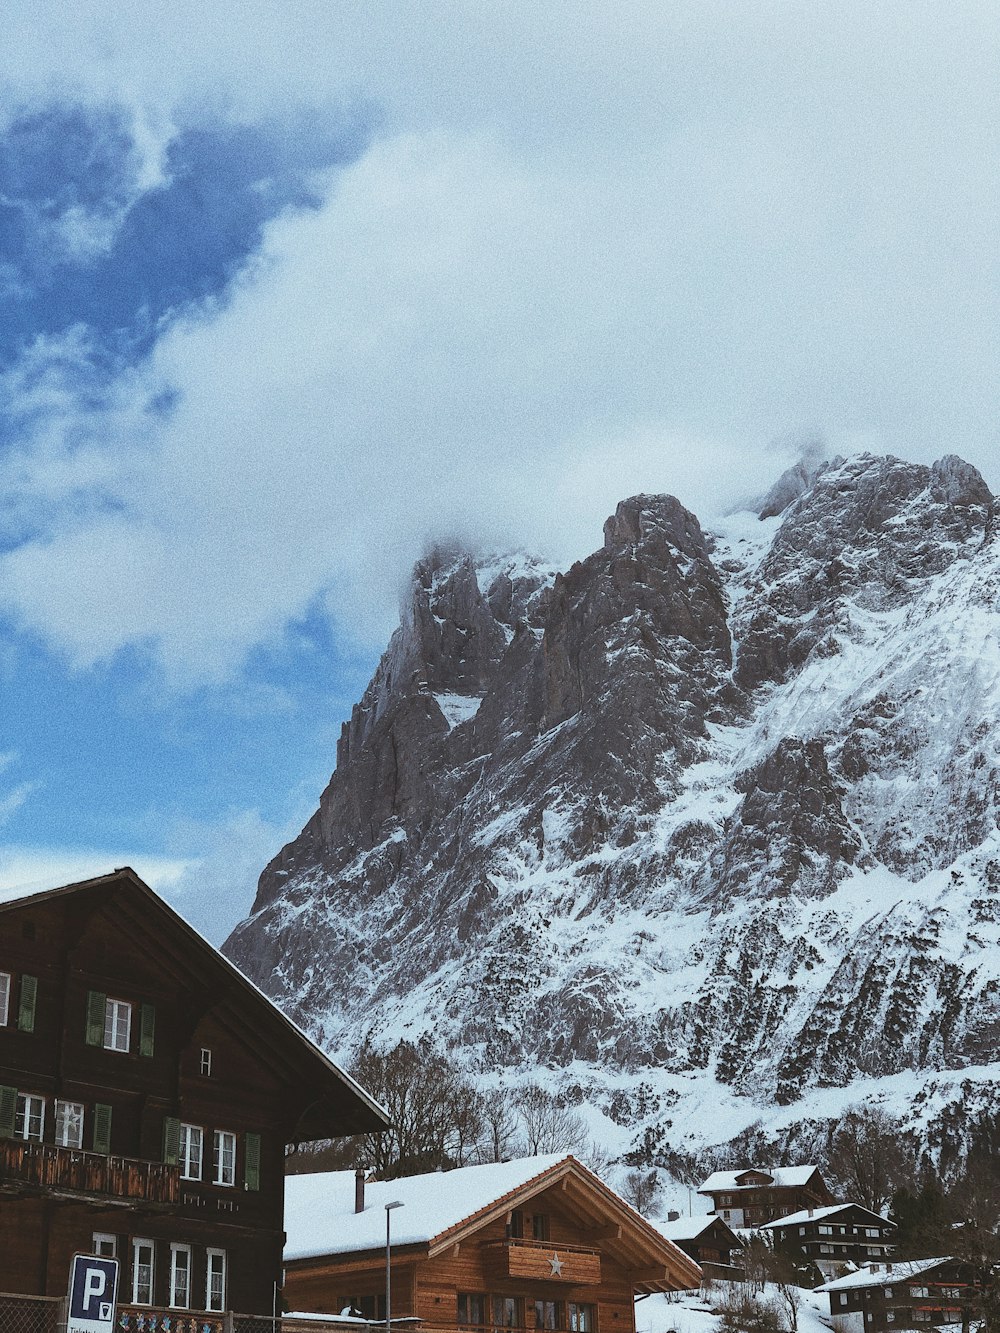 case e cima della montagna coperta di neve sotto il cielo bianco e blu